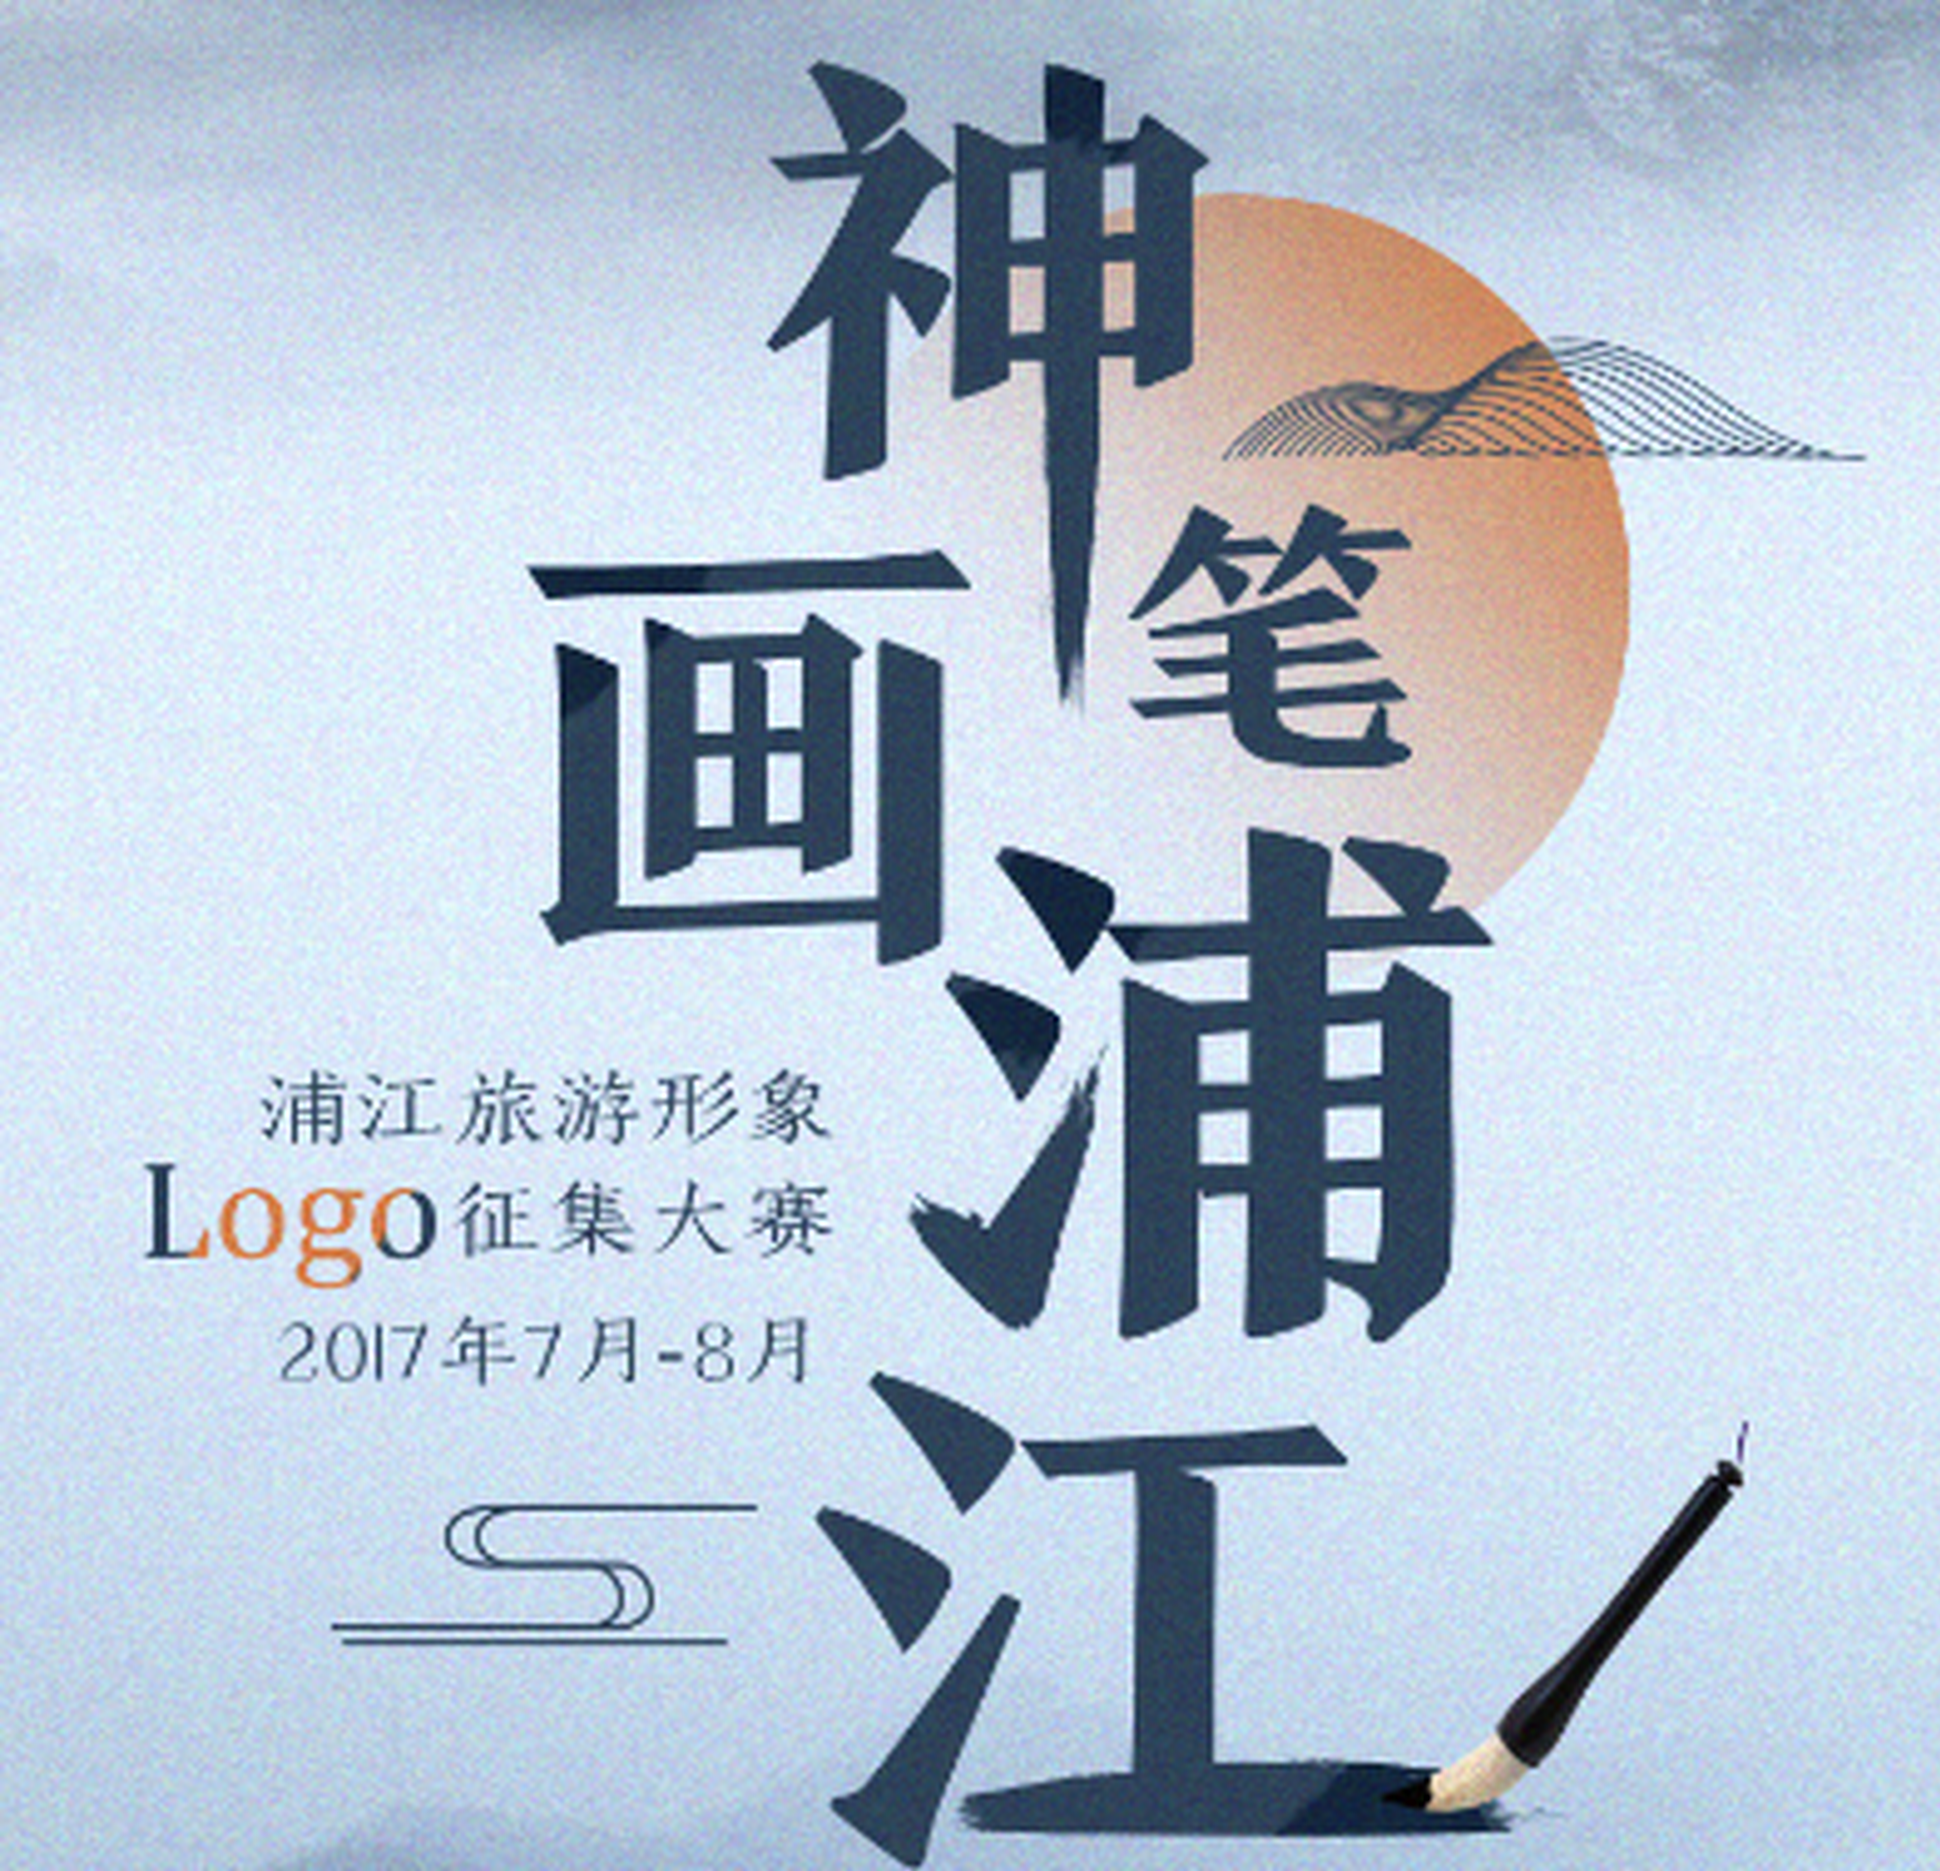 浦江旅游logo设计大赛